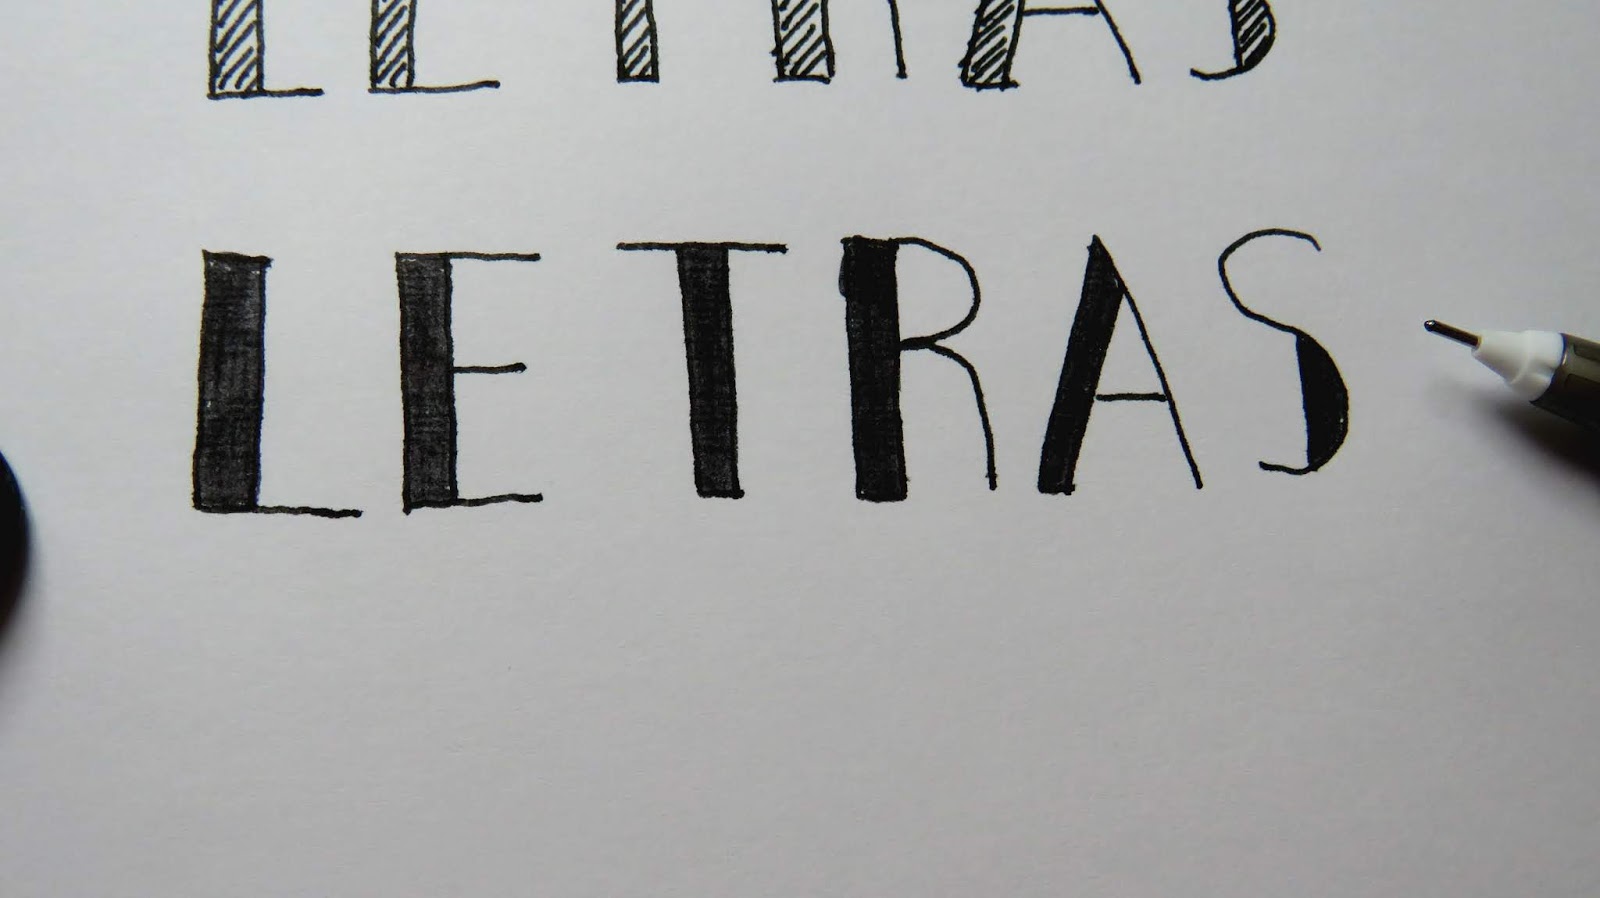 Letras bonitas para títulos fáciles - Alejandra Colomera | Acf Studio